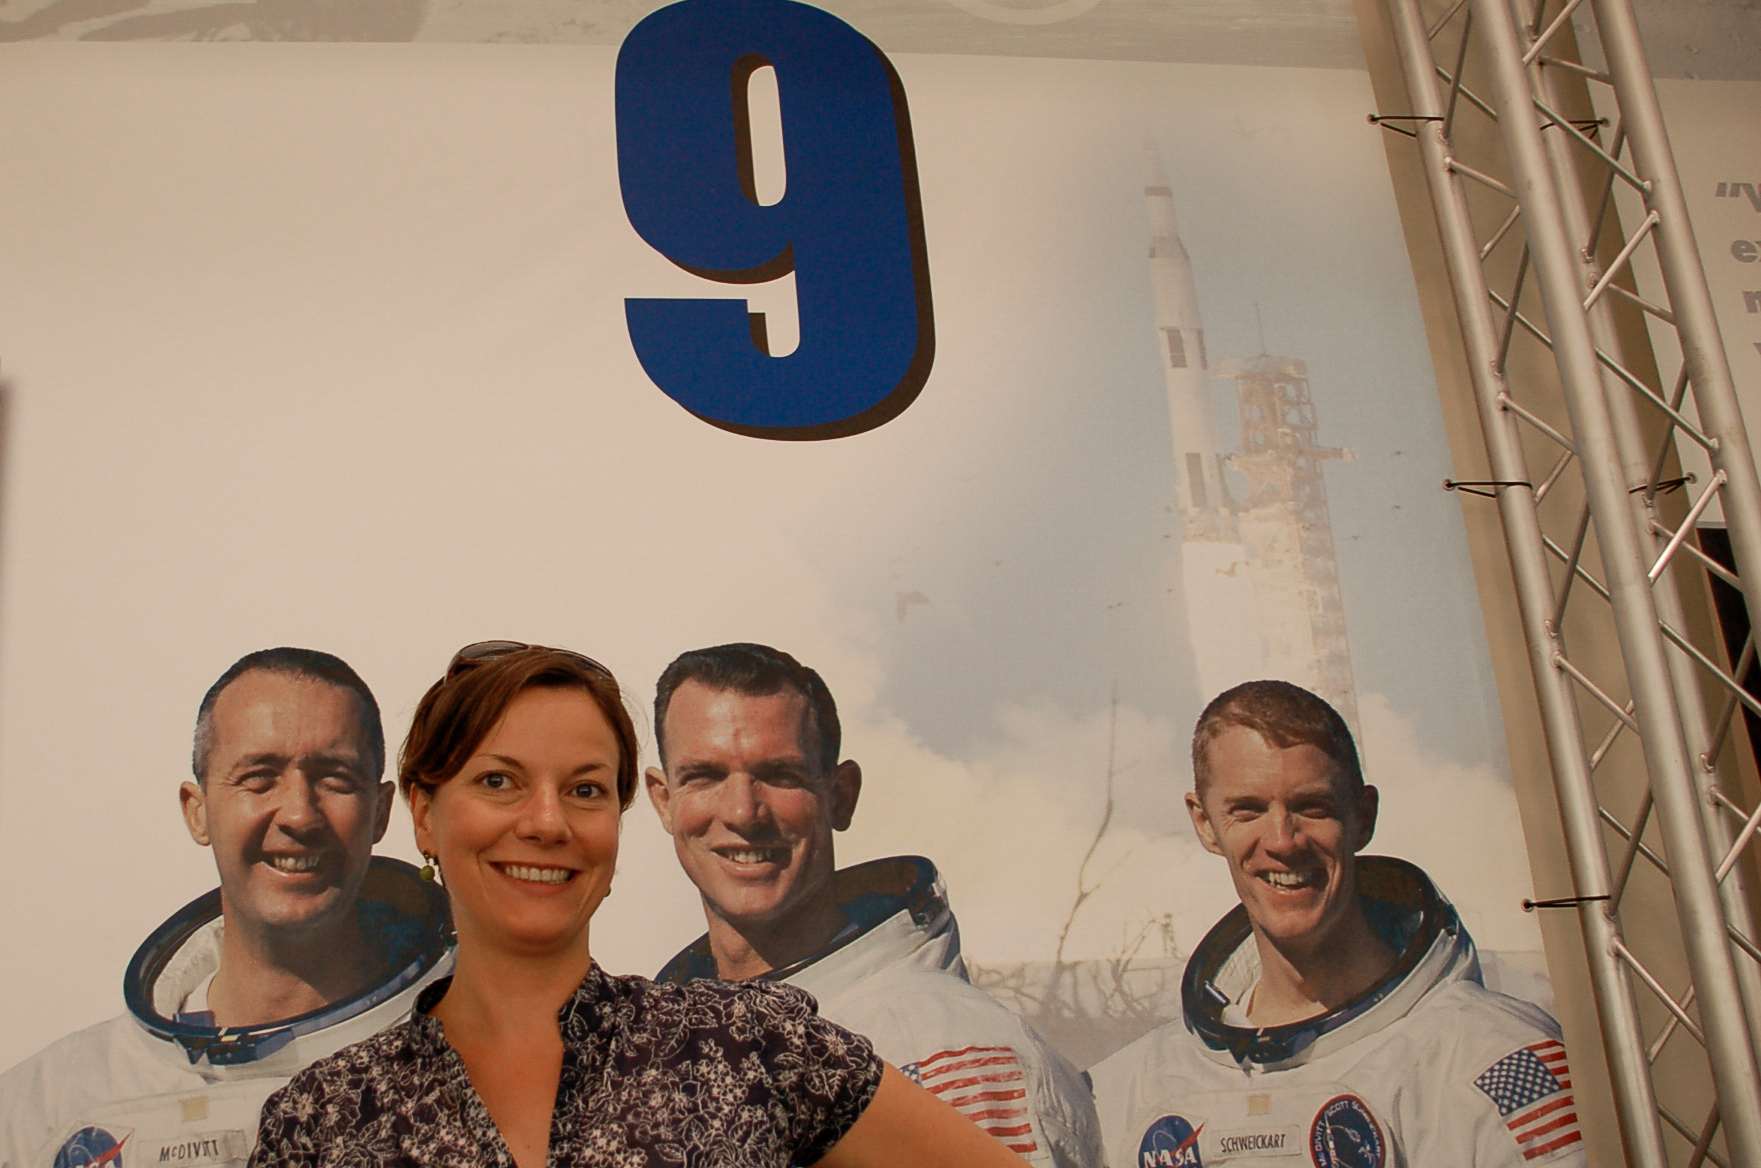 Junge Frau zwischen der Crew von Apollo 9 im NASA Space Center in Houston